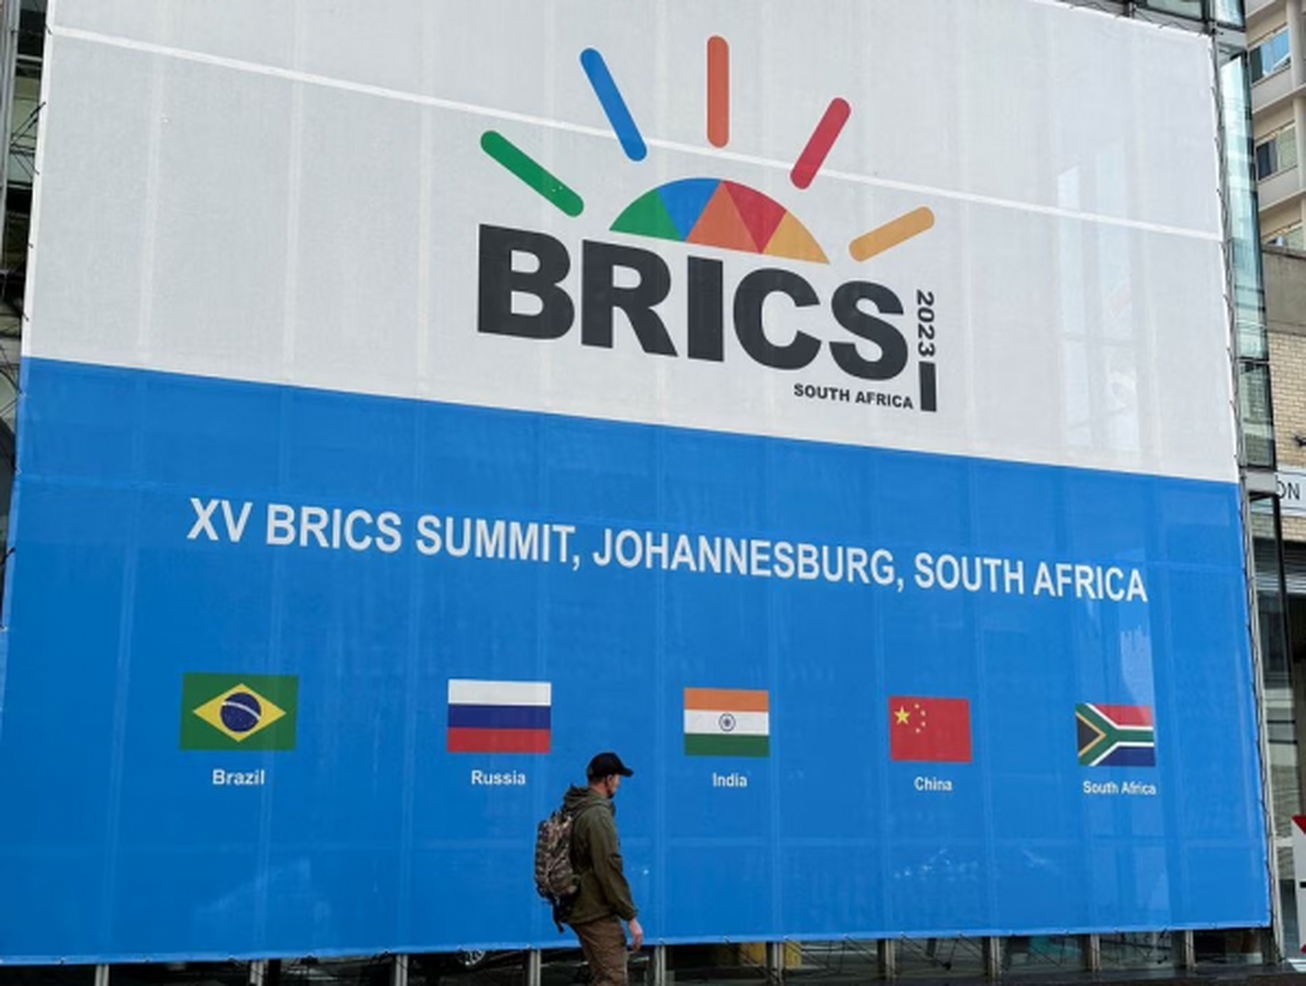 نشست سران بریکس امروز در آفریقای جنوبی با تمرکز بر توسعه آغاز شد